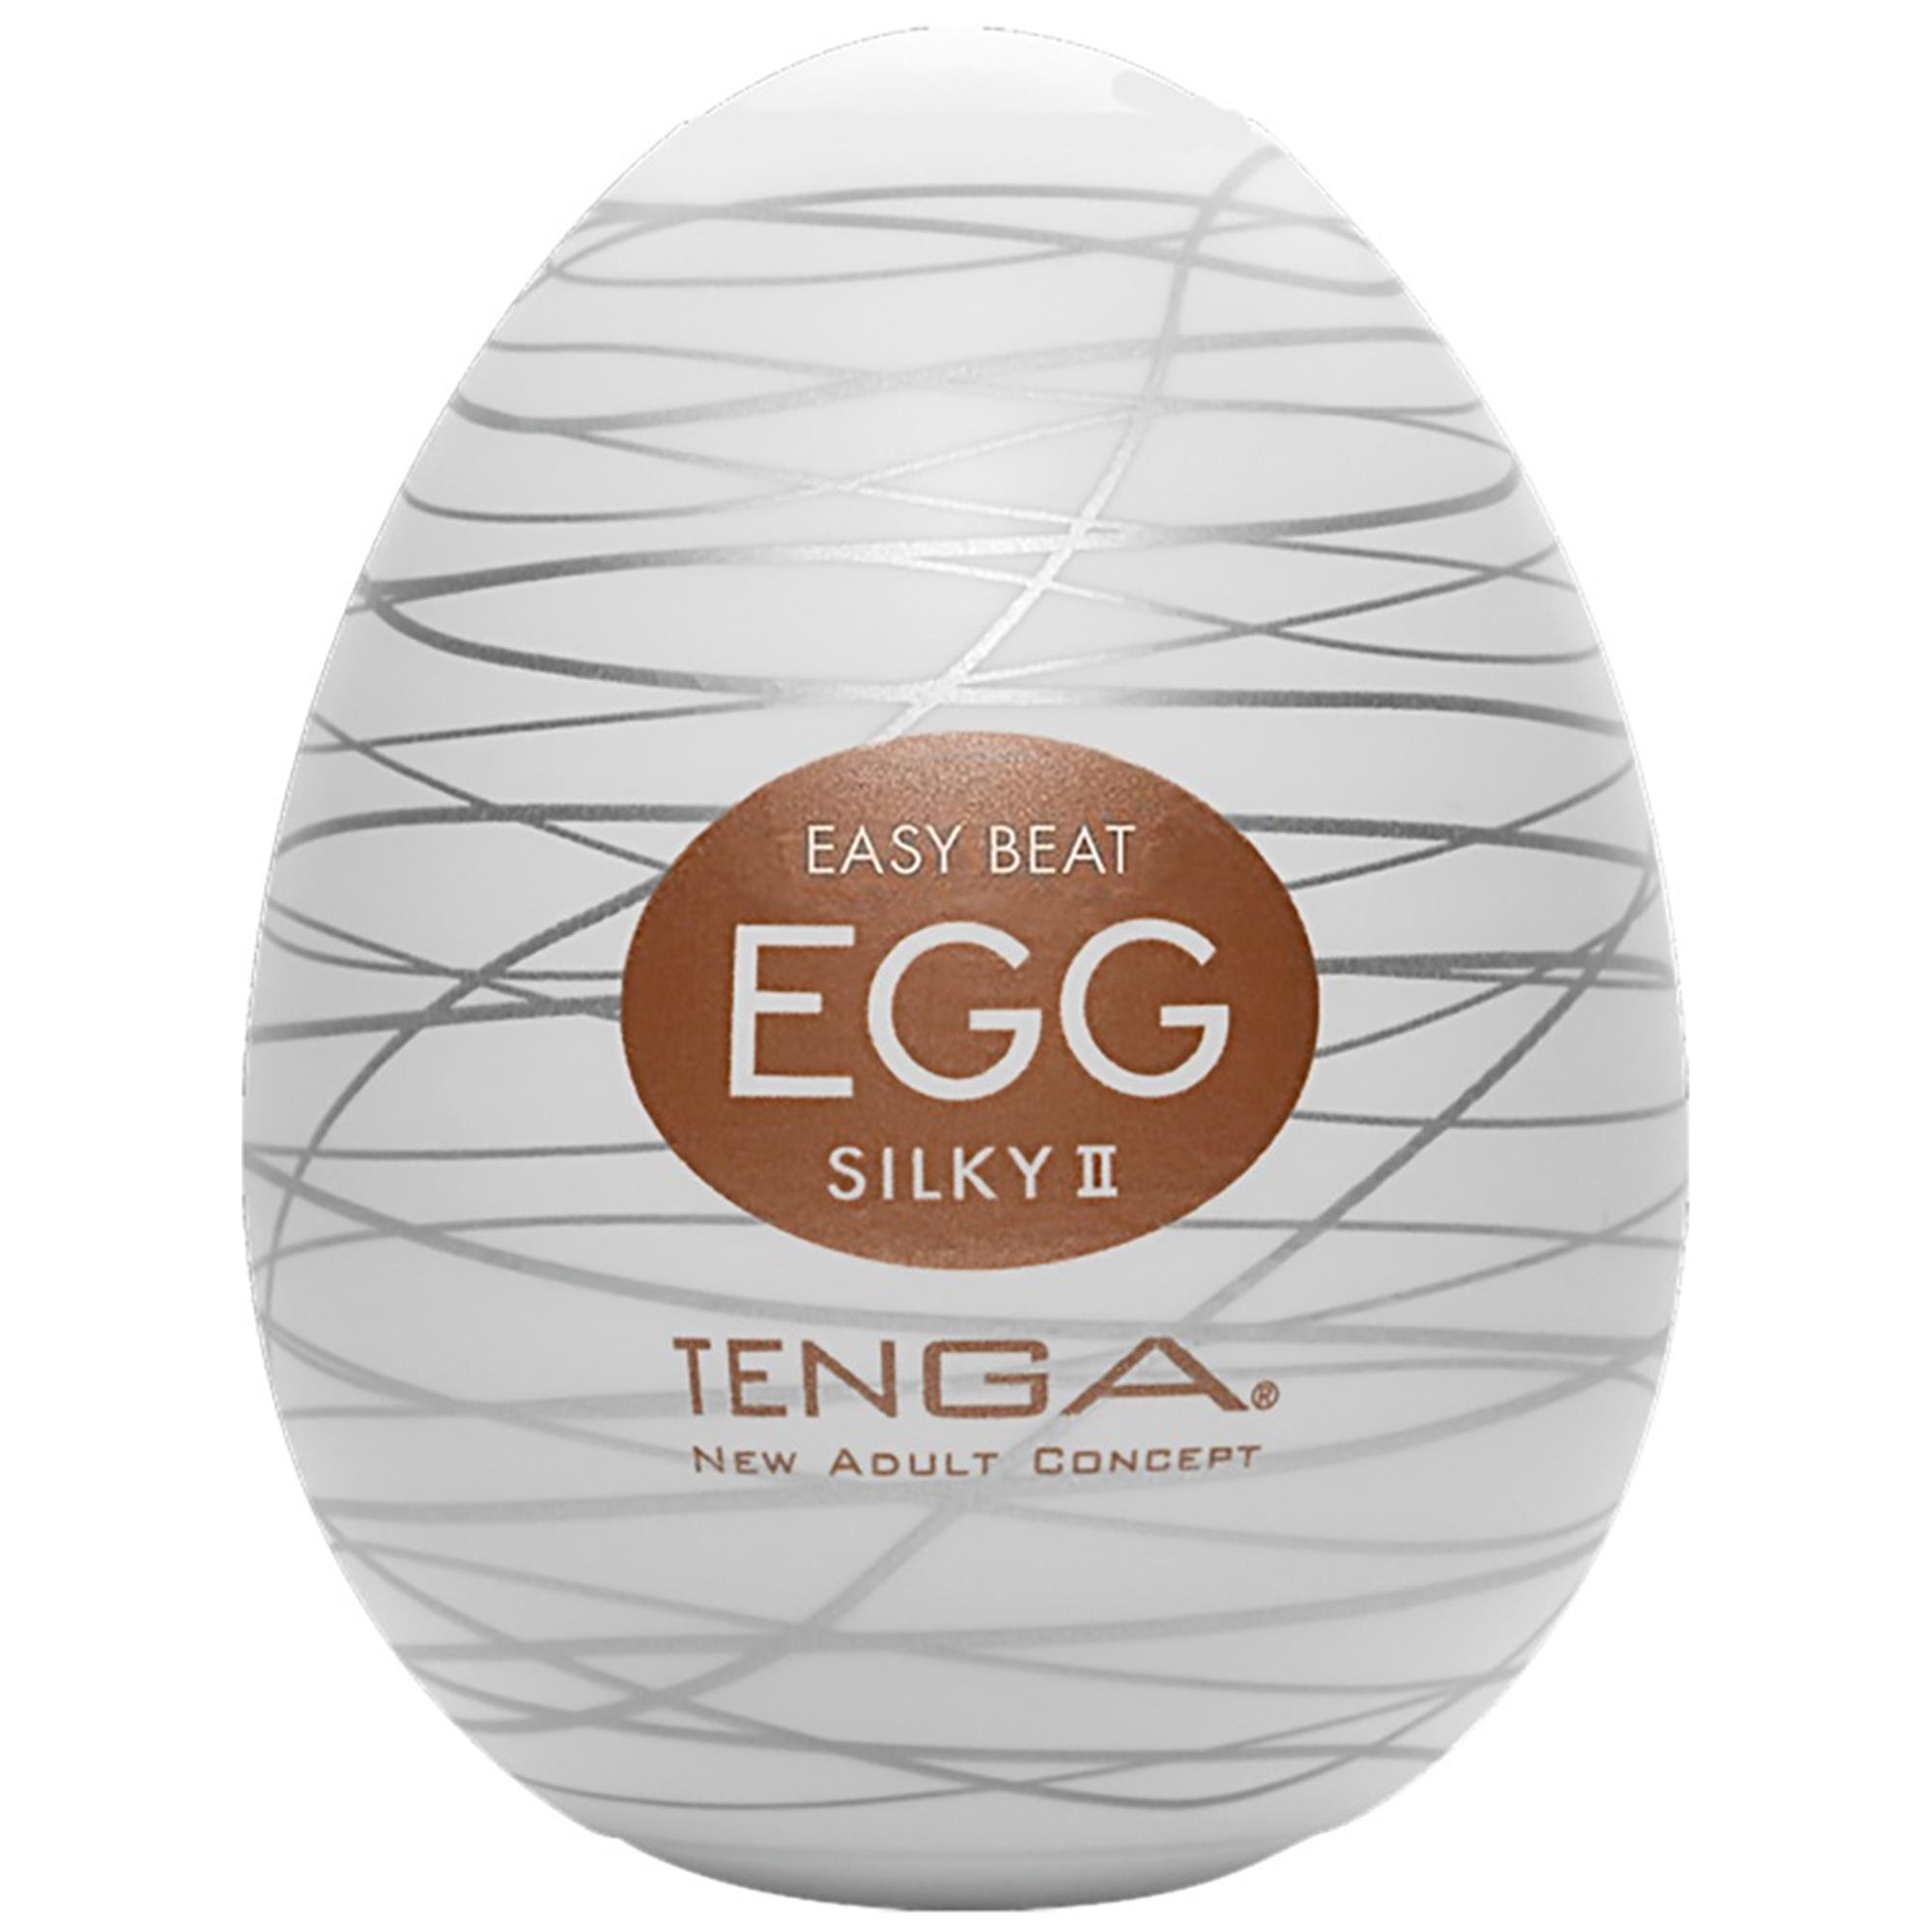 Billede af Tenga - Egg Silky